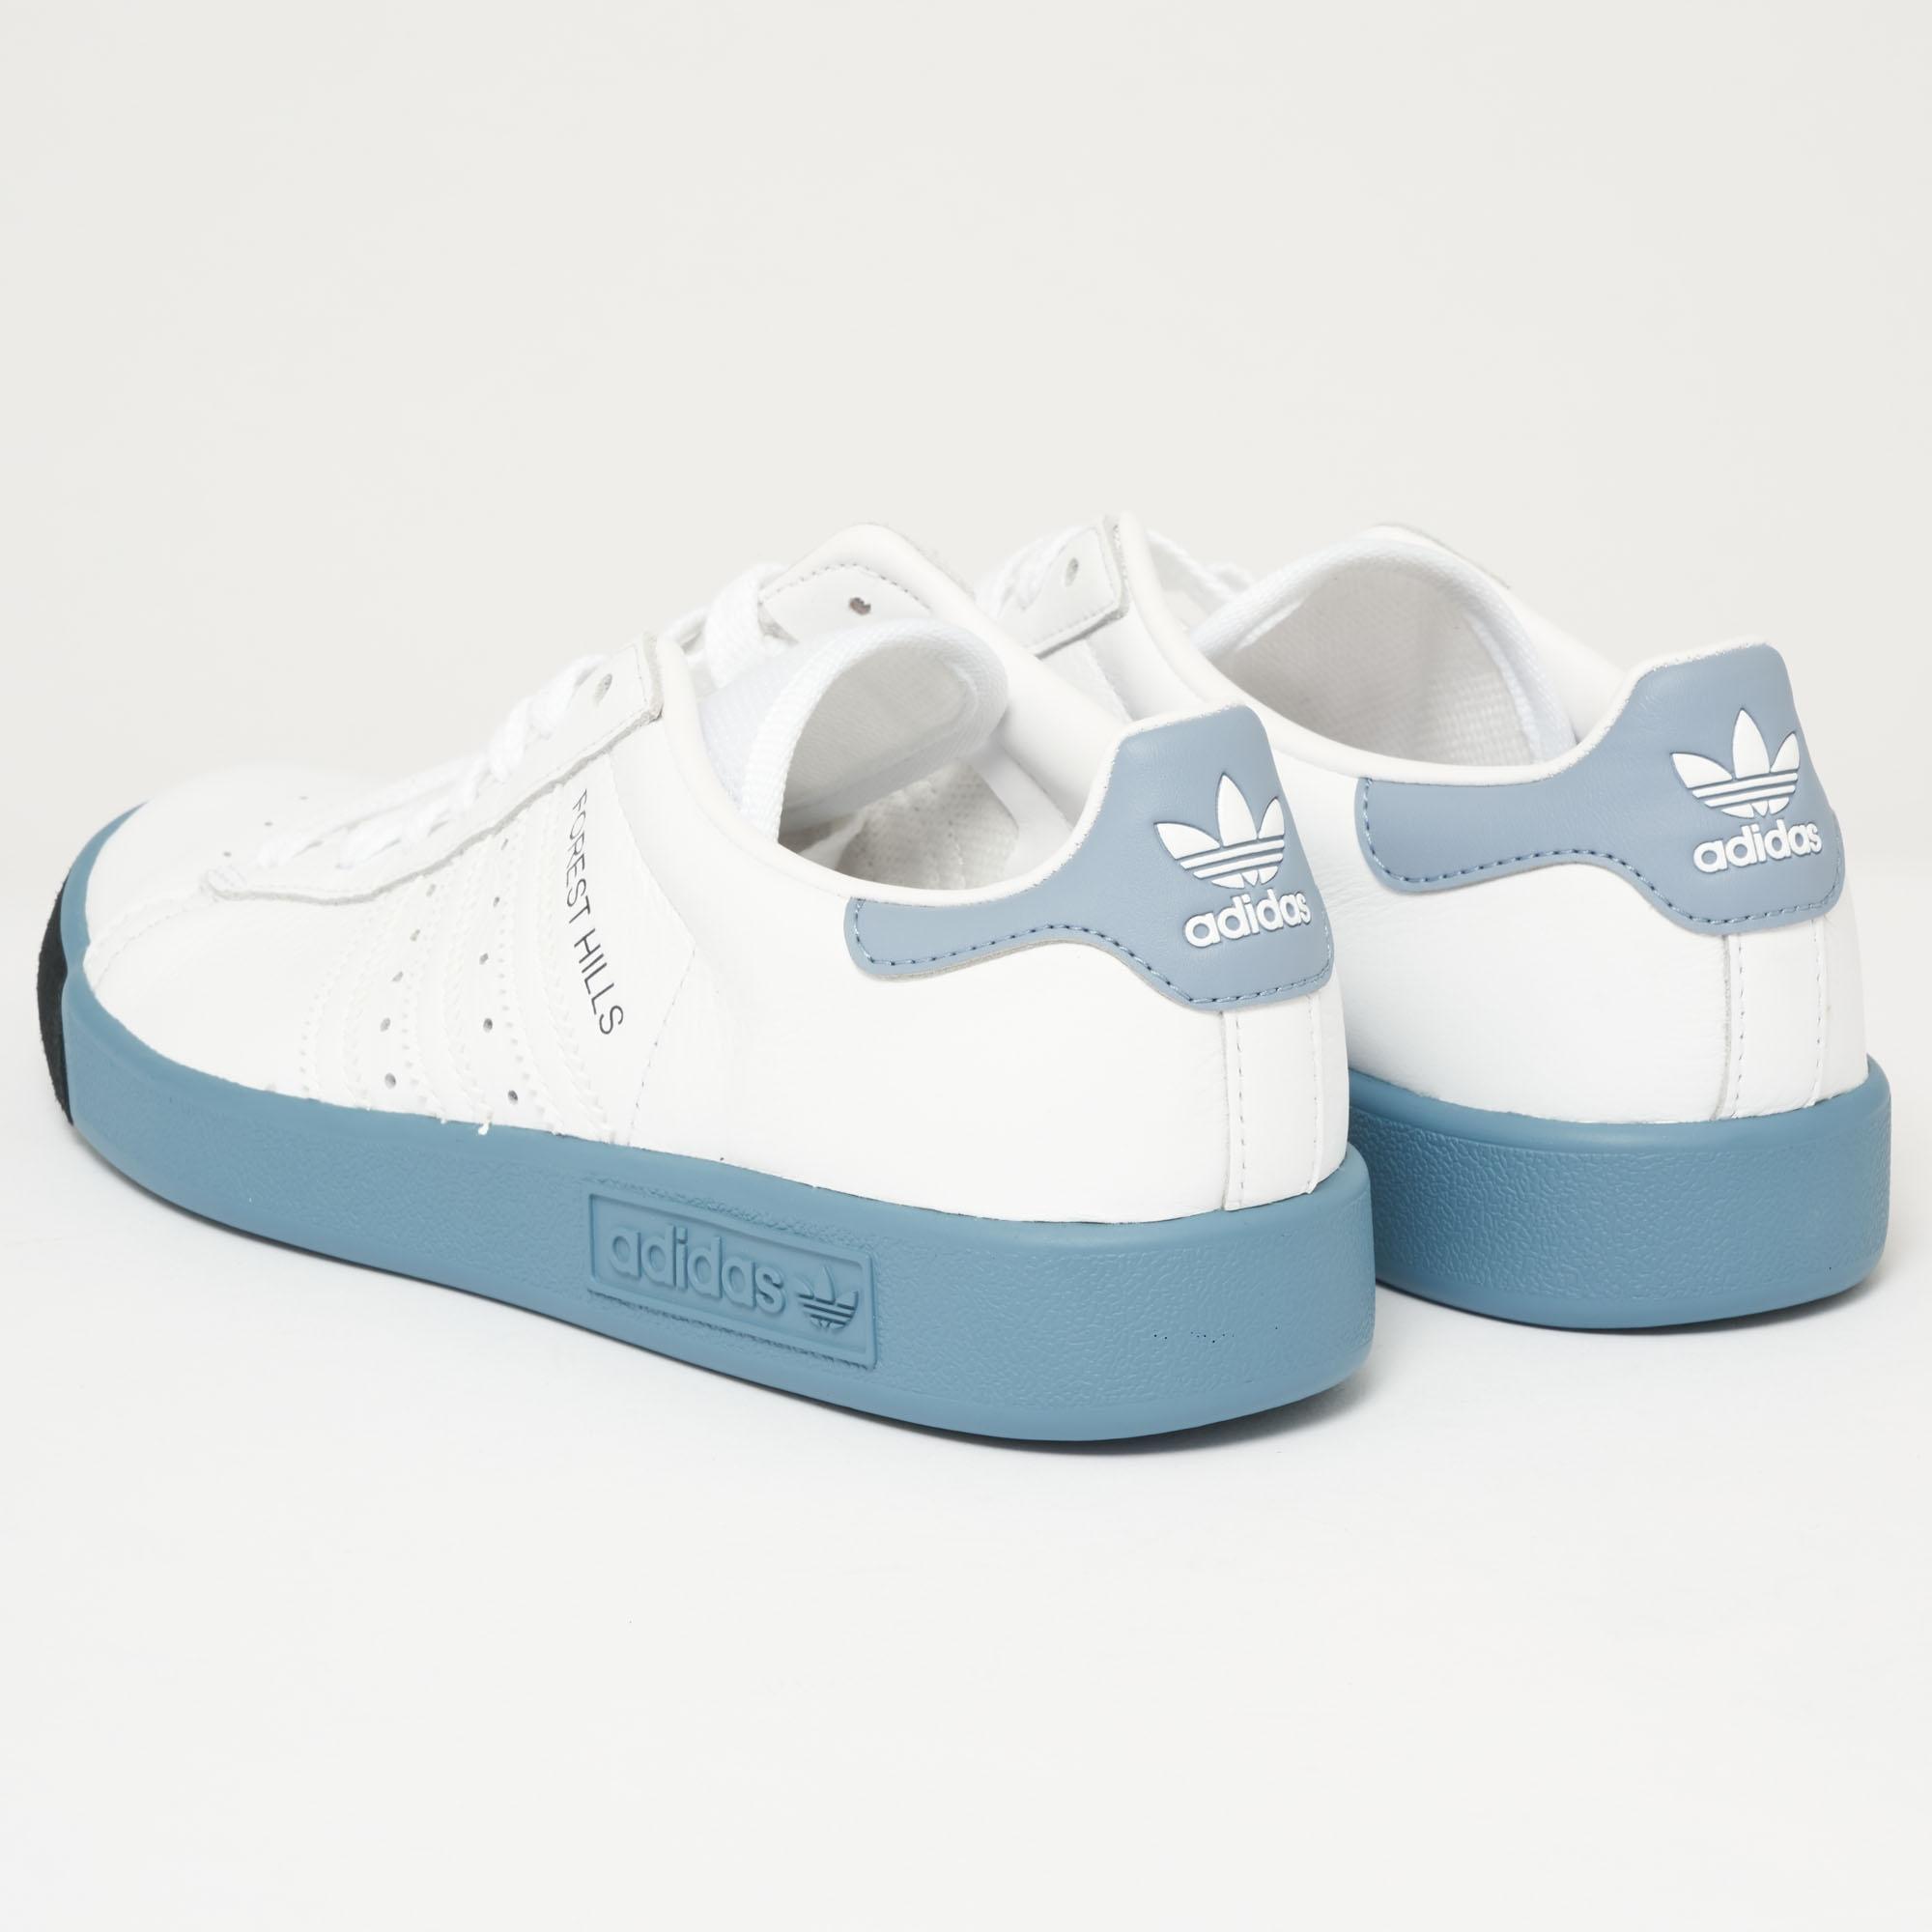 adidas Originals Forest Hills - White & Blue | Lyst Australia